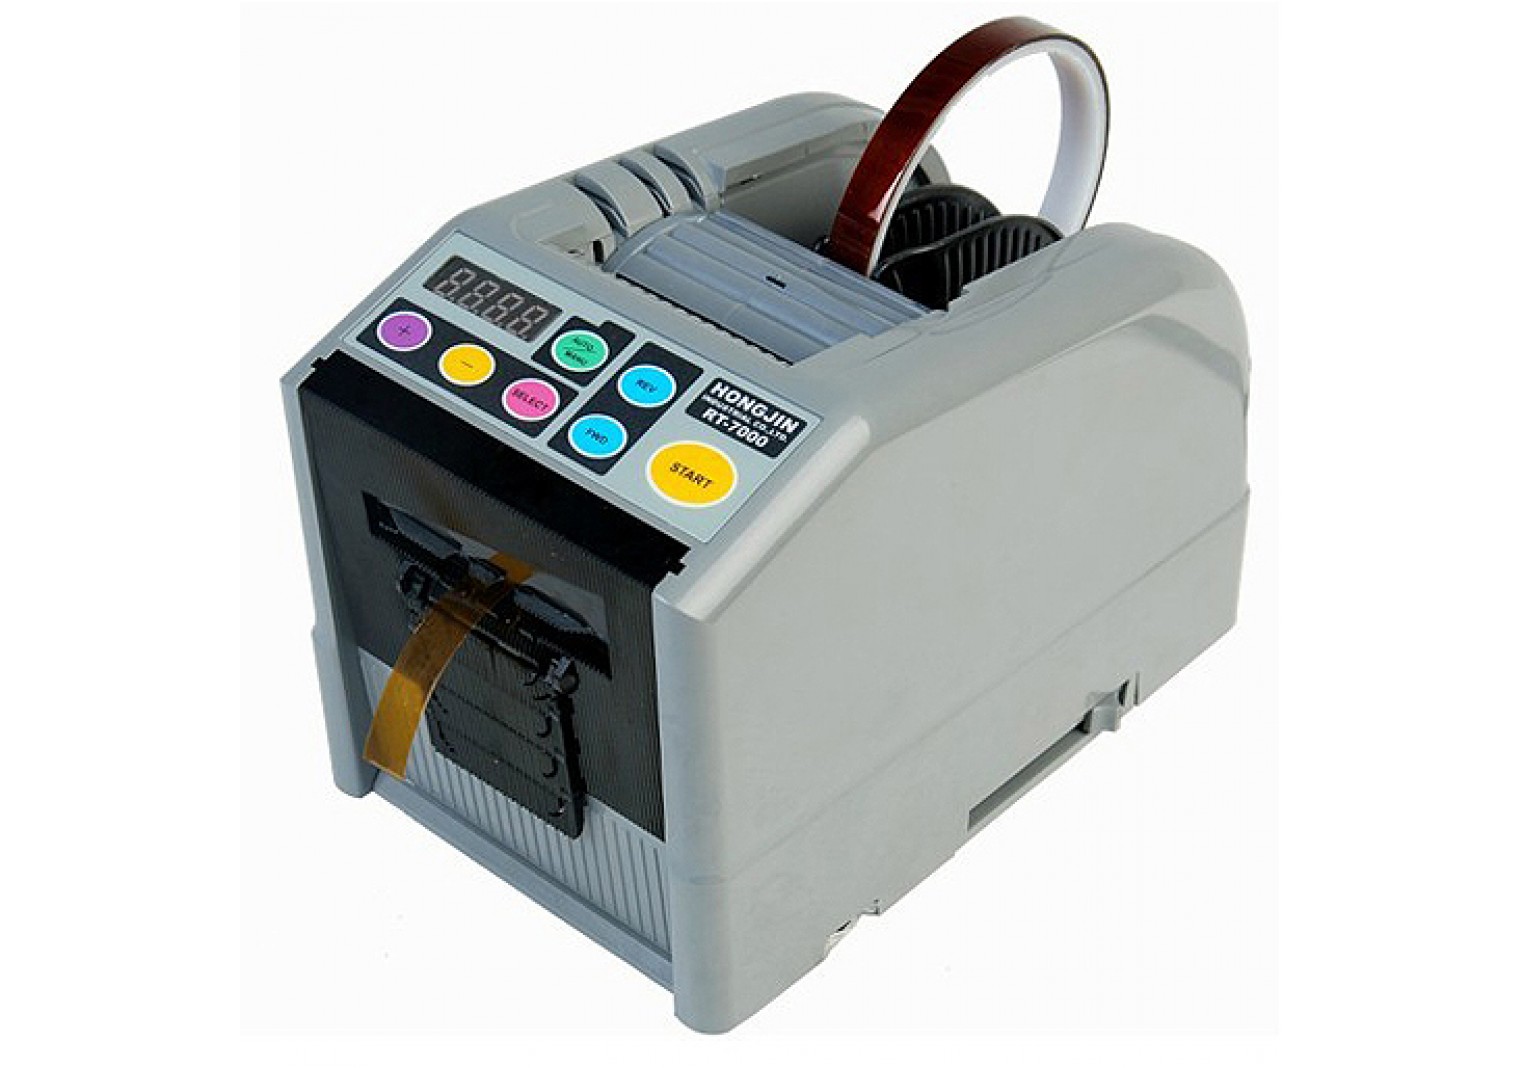 HongJin RT-7000 Tape Dispenser